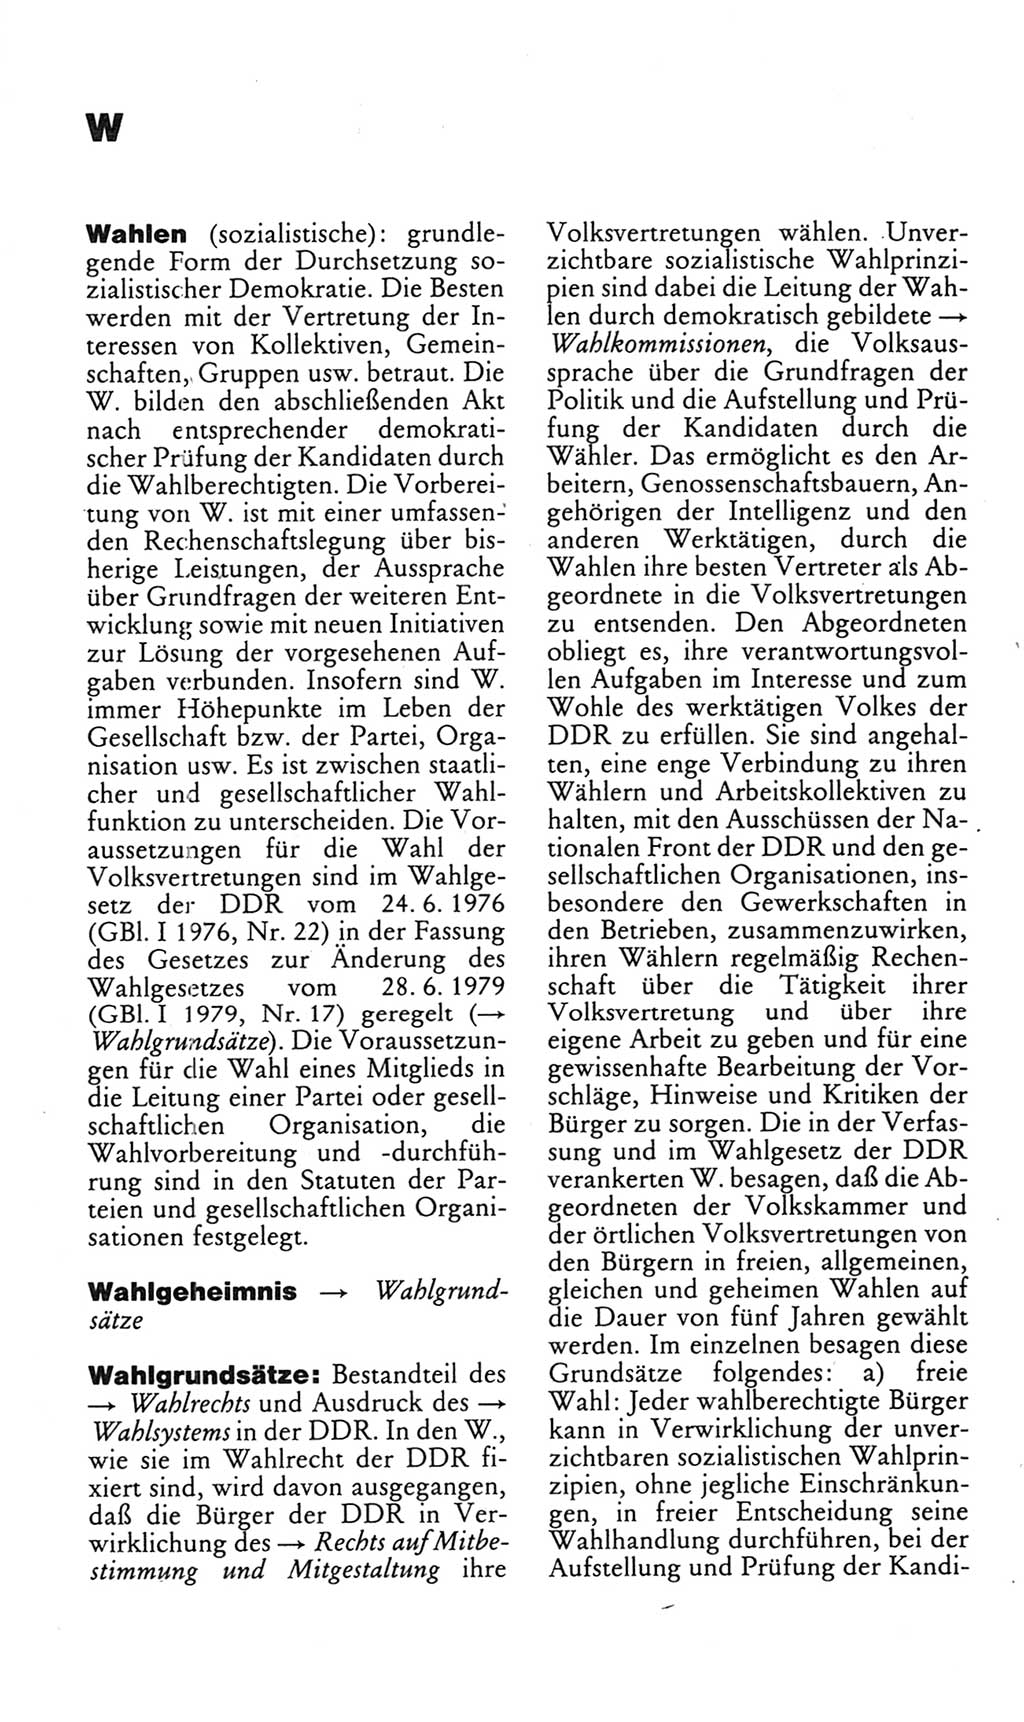 Kleines politisches Wörterbuch [Deutsche Demokratische Republik (DDR)] 1985, Seite 1034 (Kl. pol. Wb. DDR 1985, S. 1034)